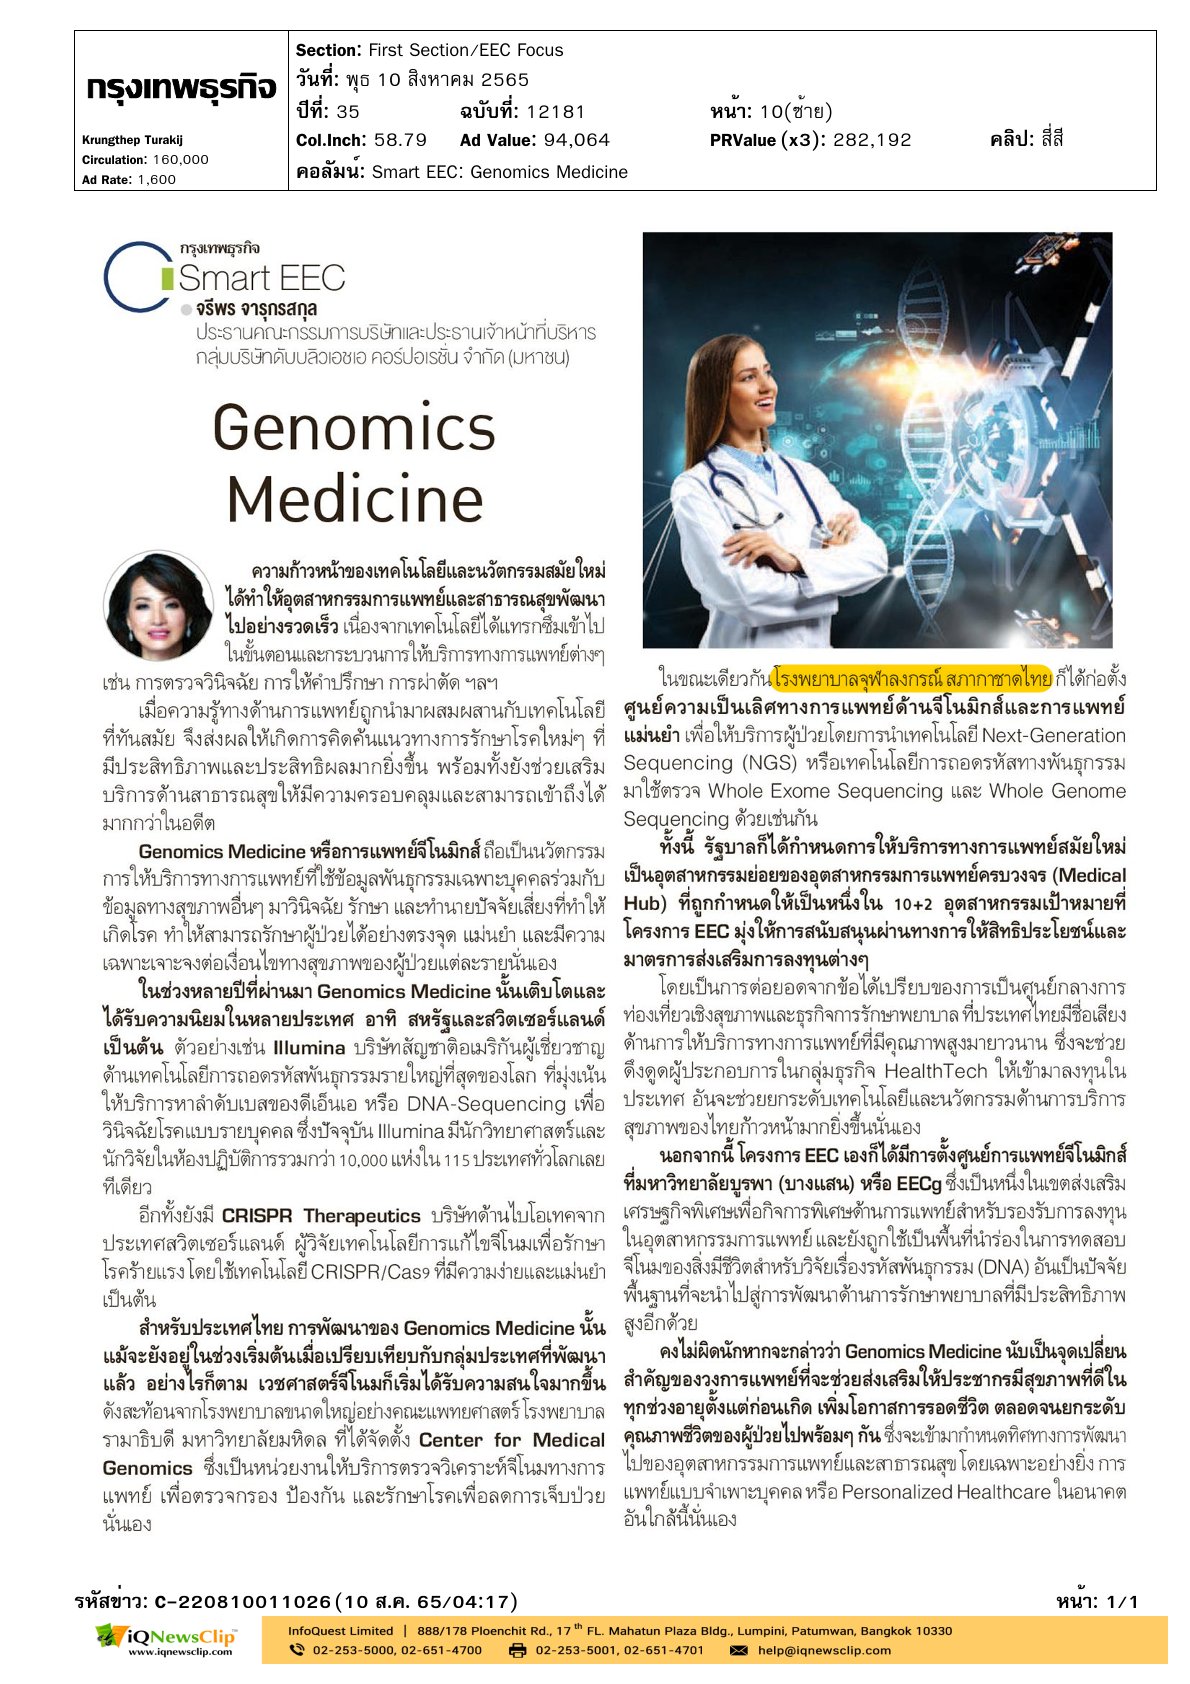 หัวข้อข่าว : Genomics Medicine